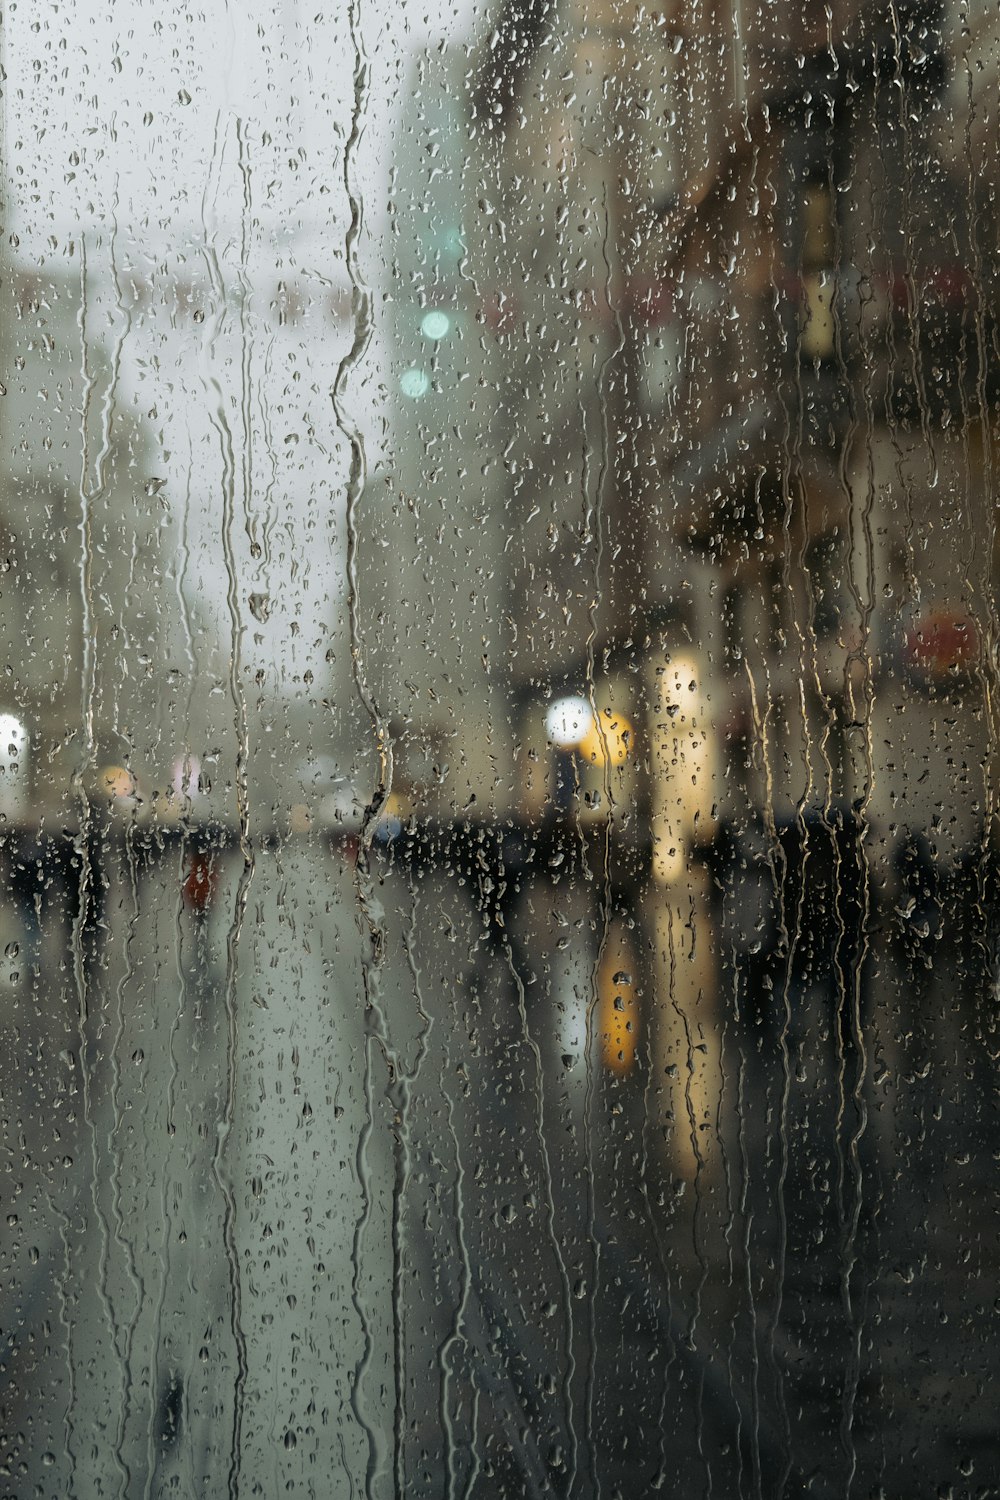 雨に濡れた窓越しに街並みを望む